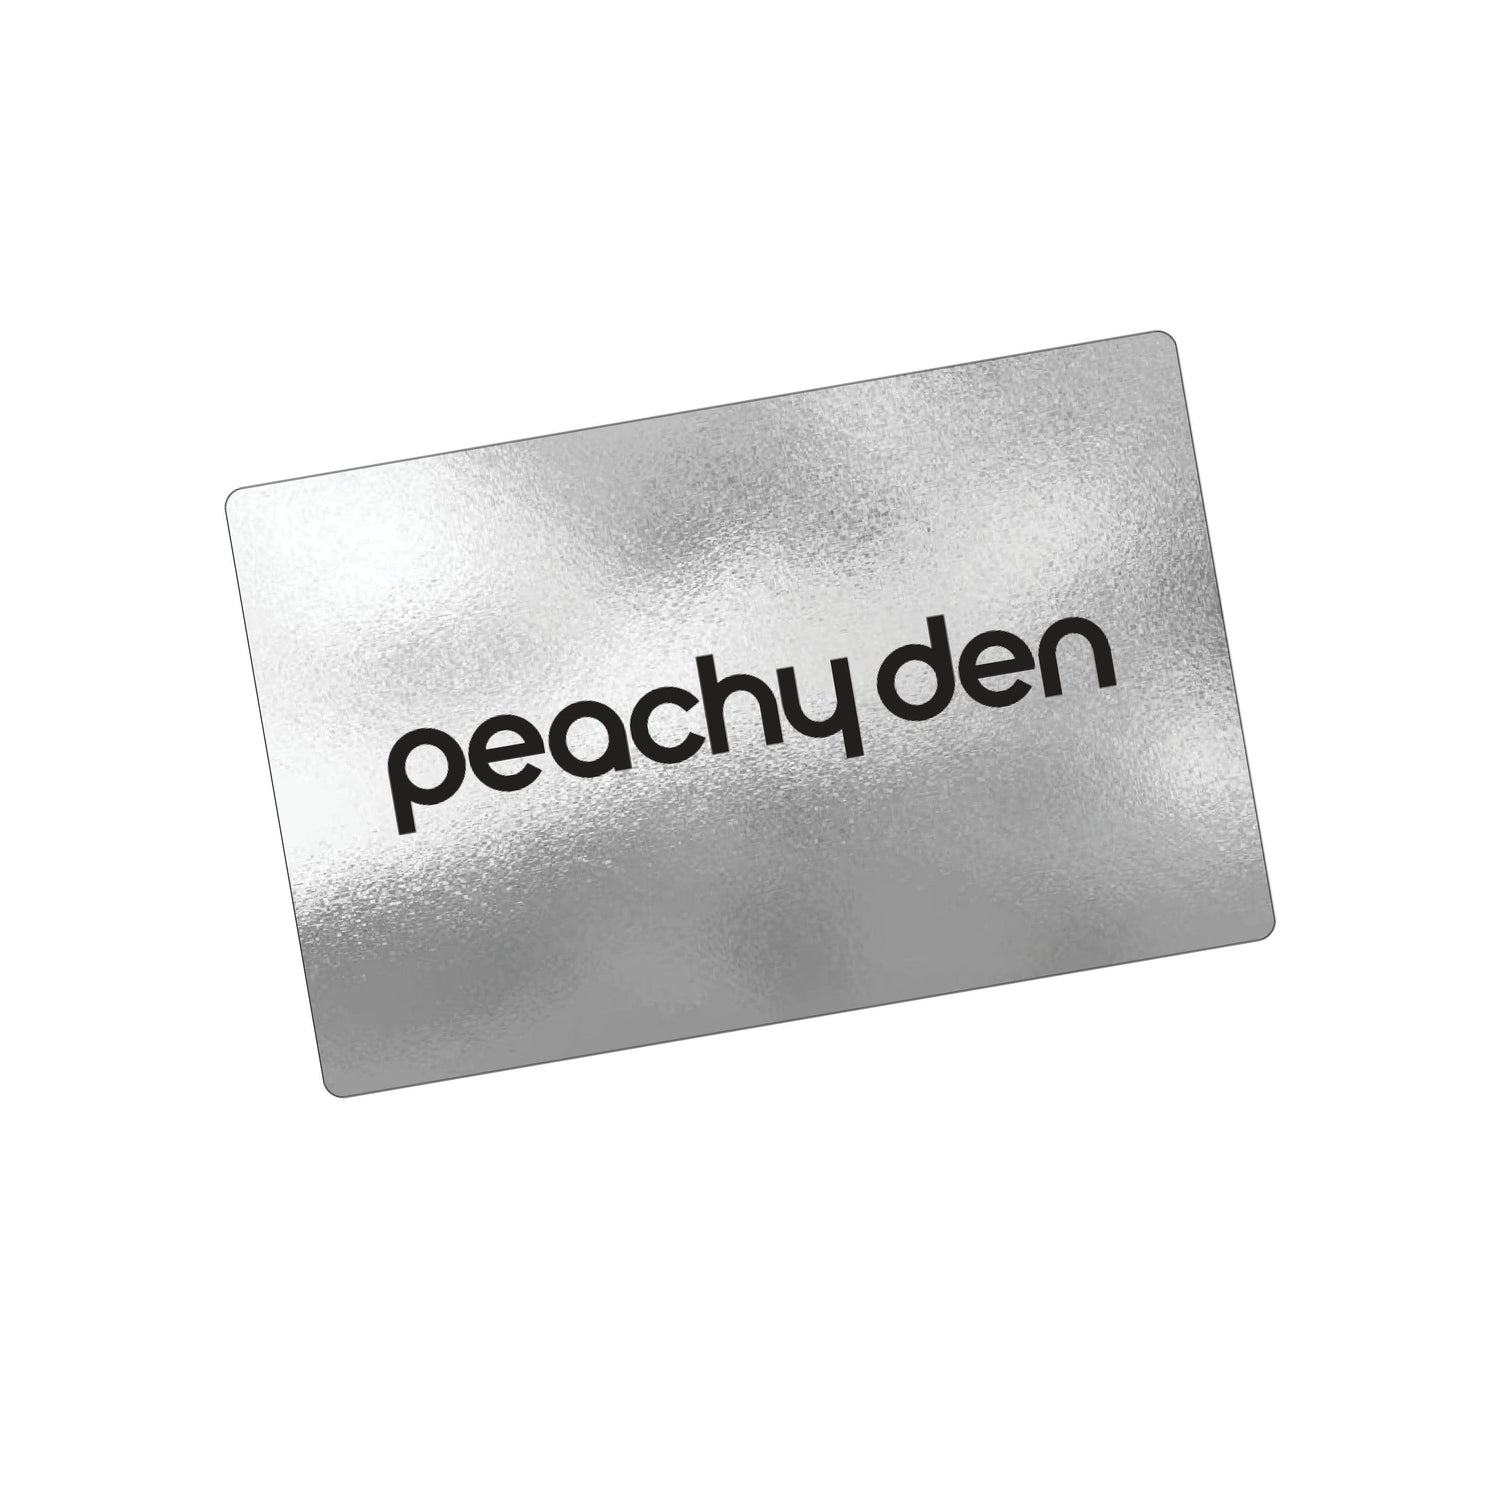 Peachy Den Gift Card